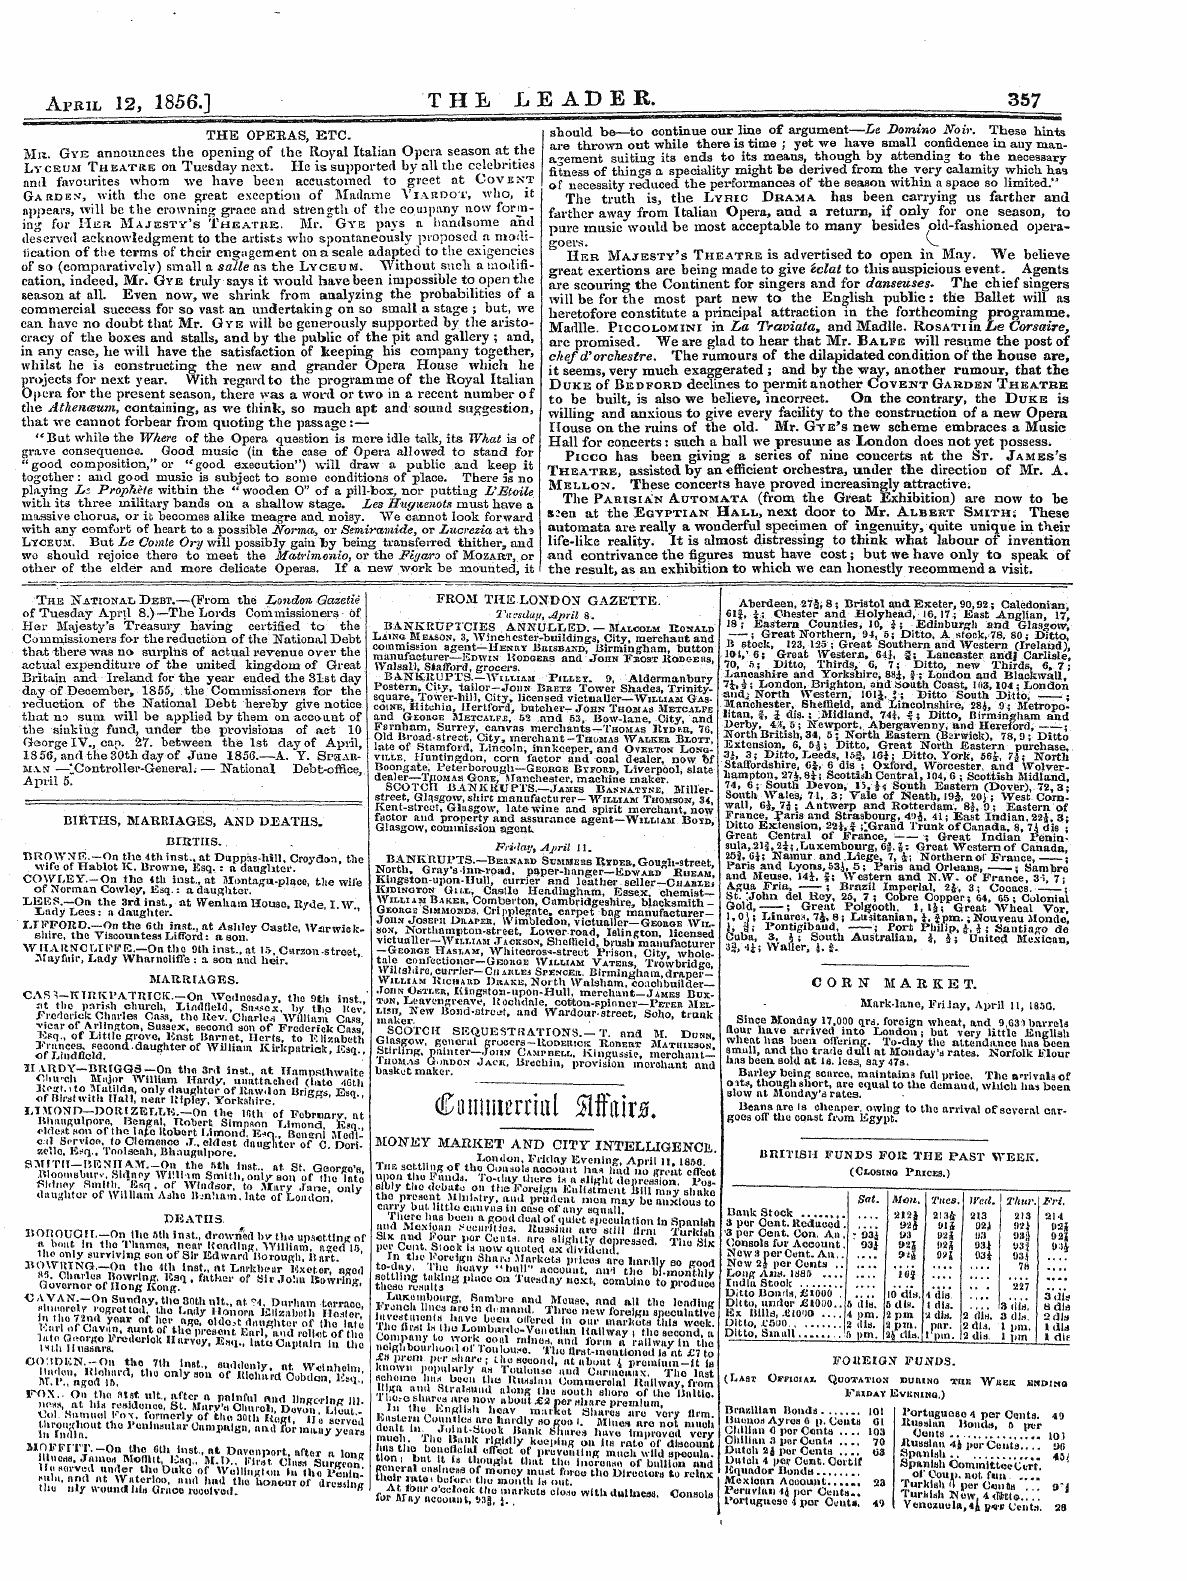 Leader (1850-1860): jS F Y, 2nd edition - April 12, 1856.1 The .Leader. 357